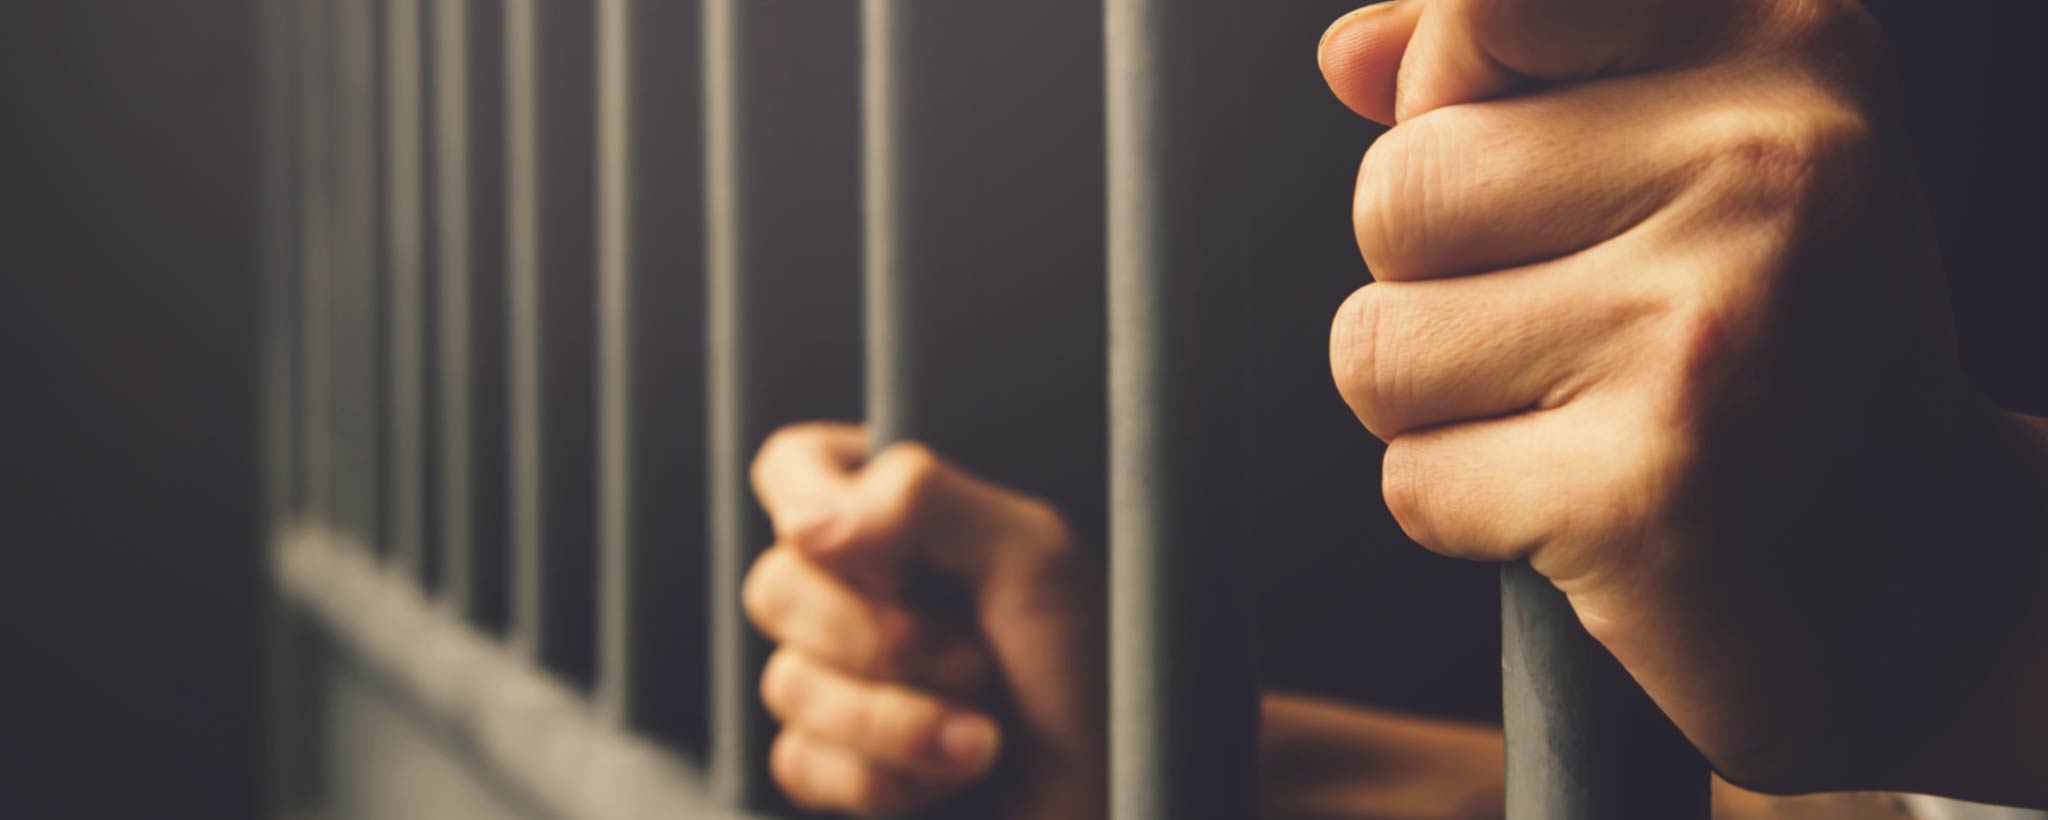 'Hands of prisoner behind bars'